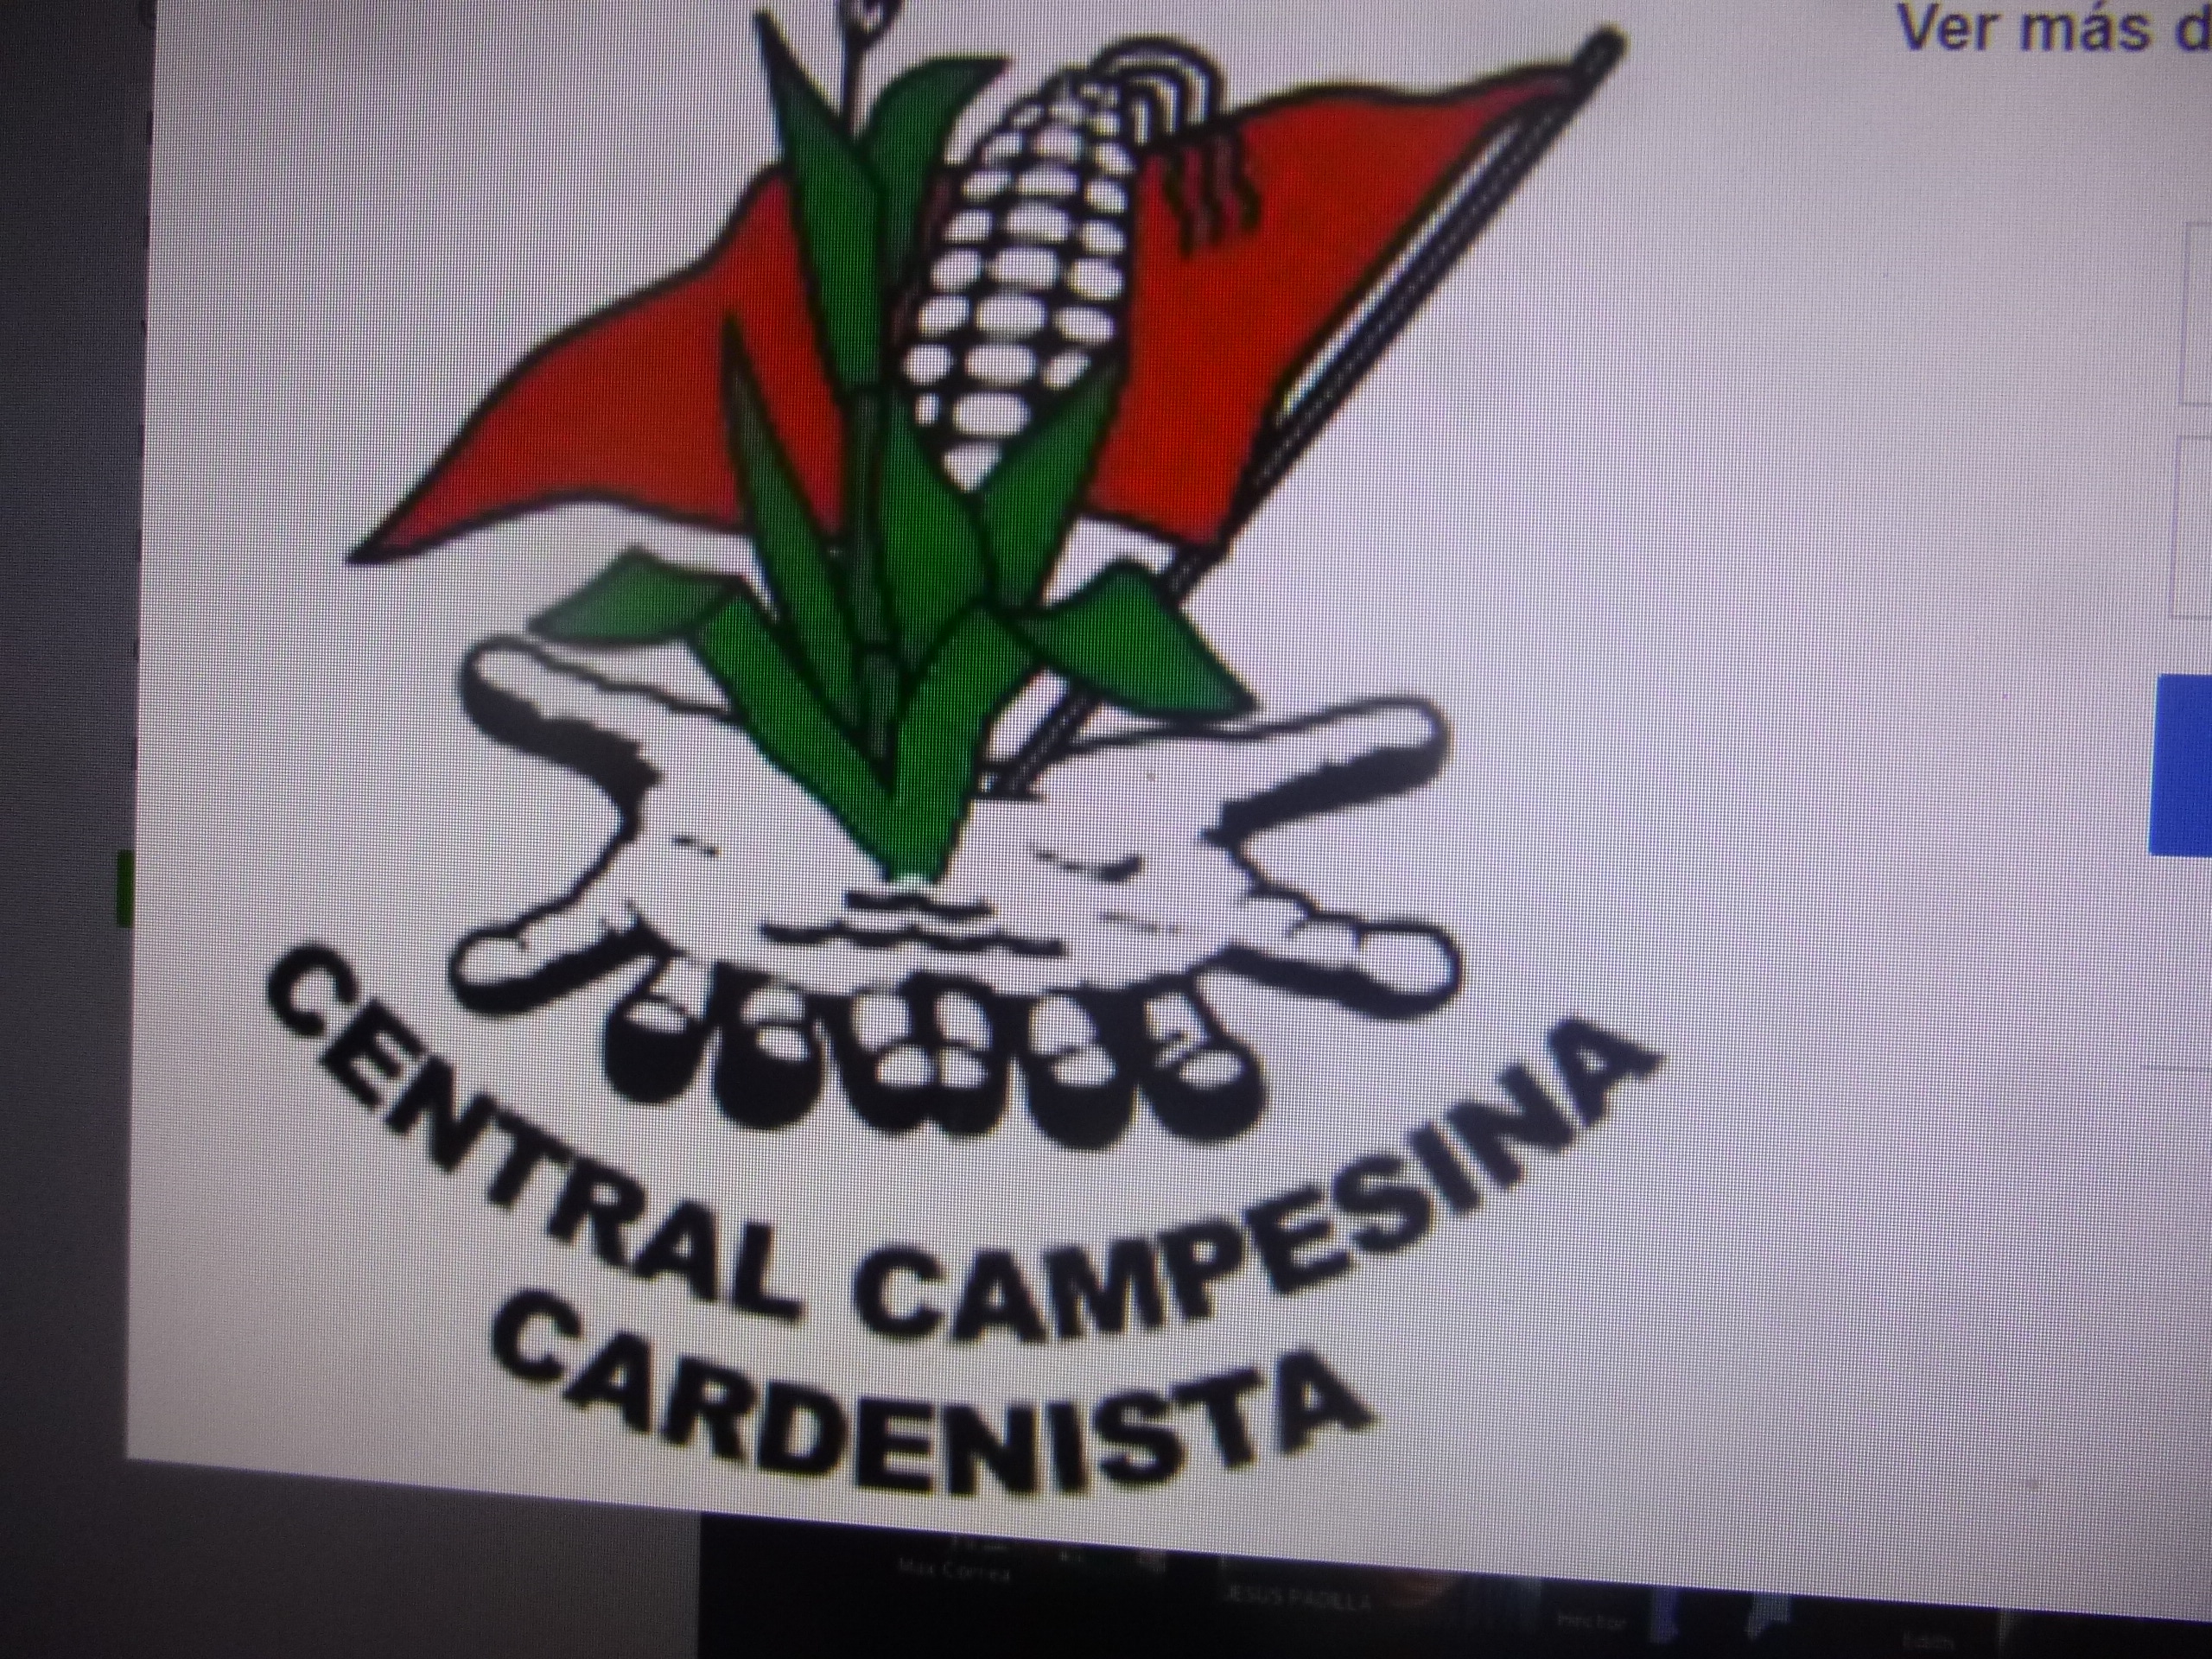 La Central Campesina Cardenista votará por Morena y sus aliados, afirmó Armando Herrera Guzmán